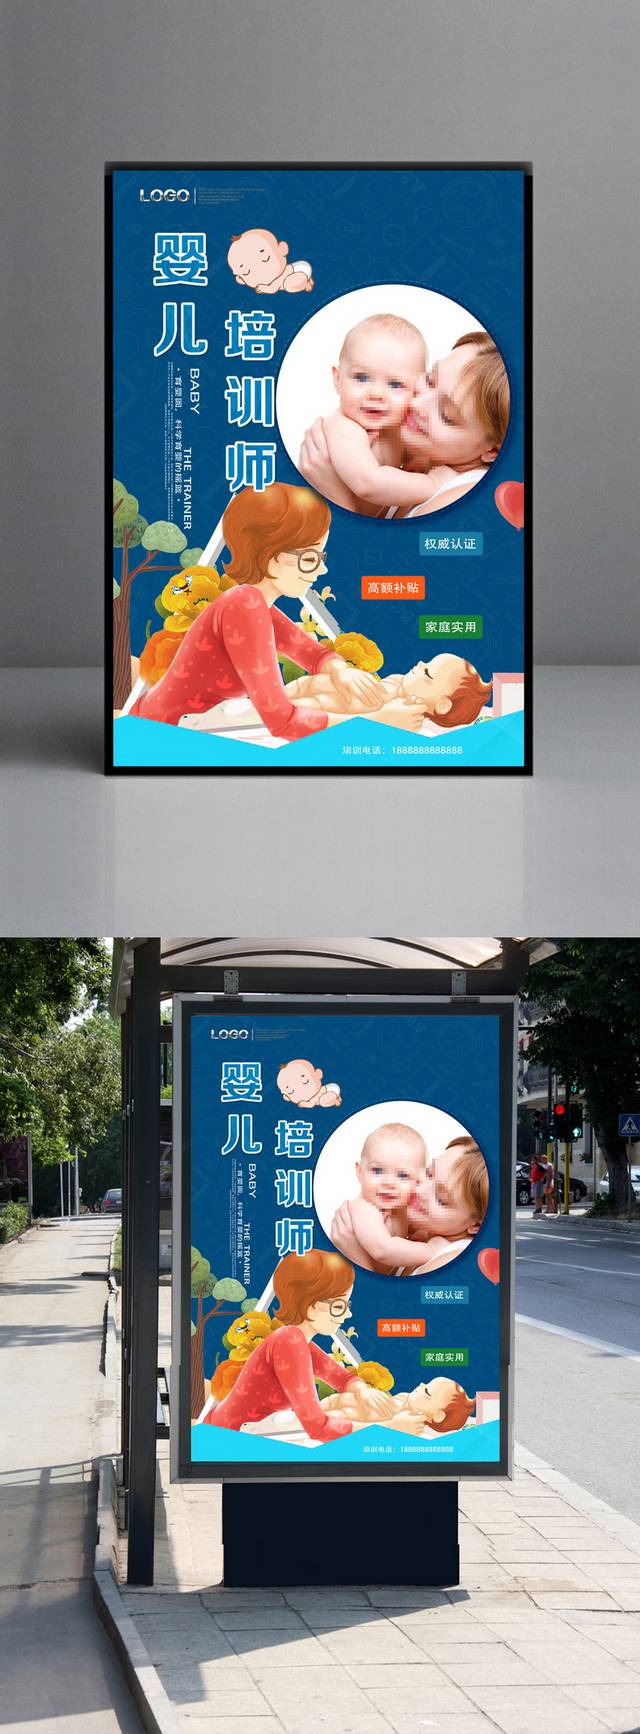 育婴师月嫂培训班宣传海报